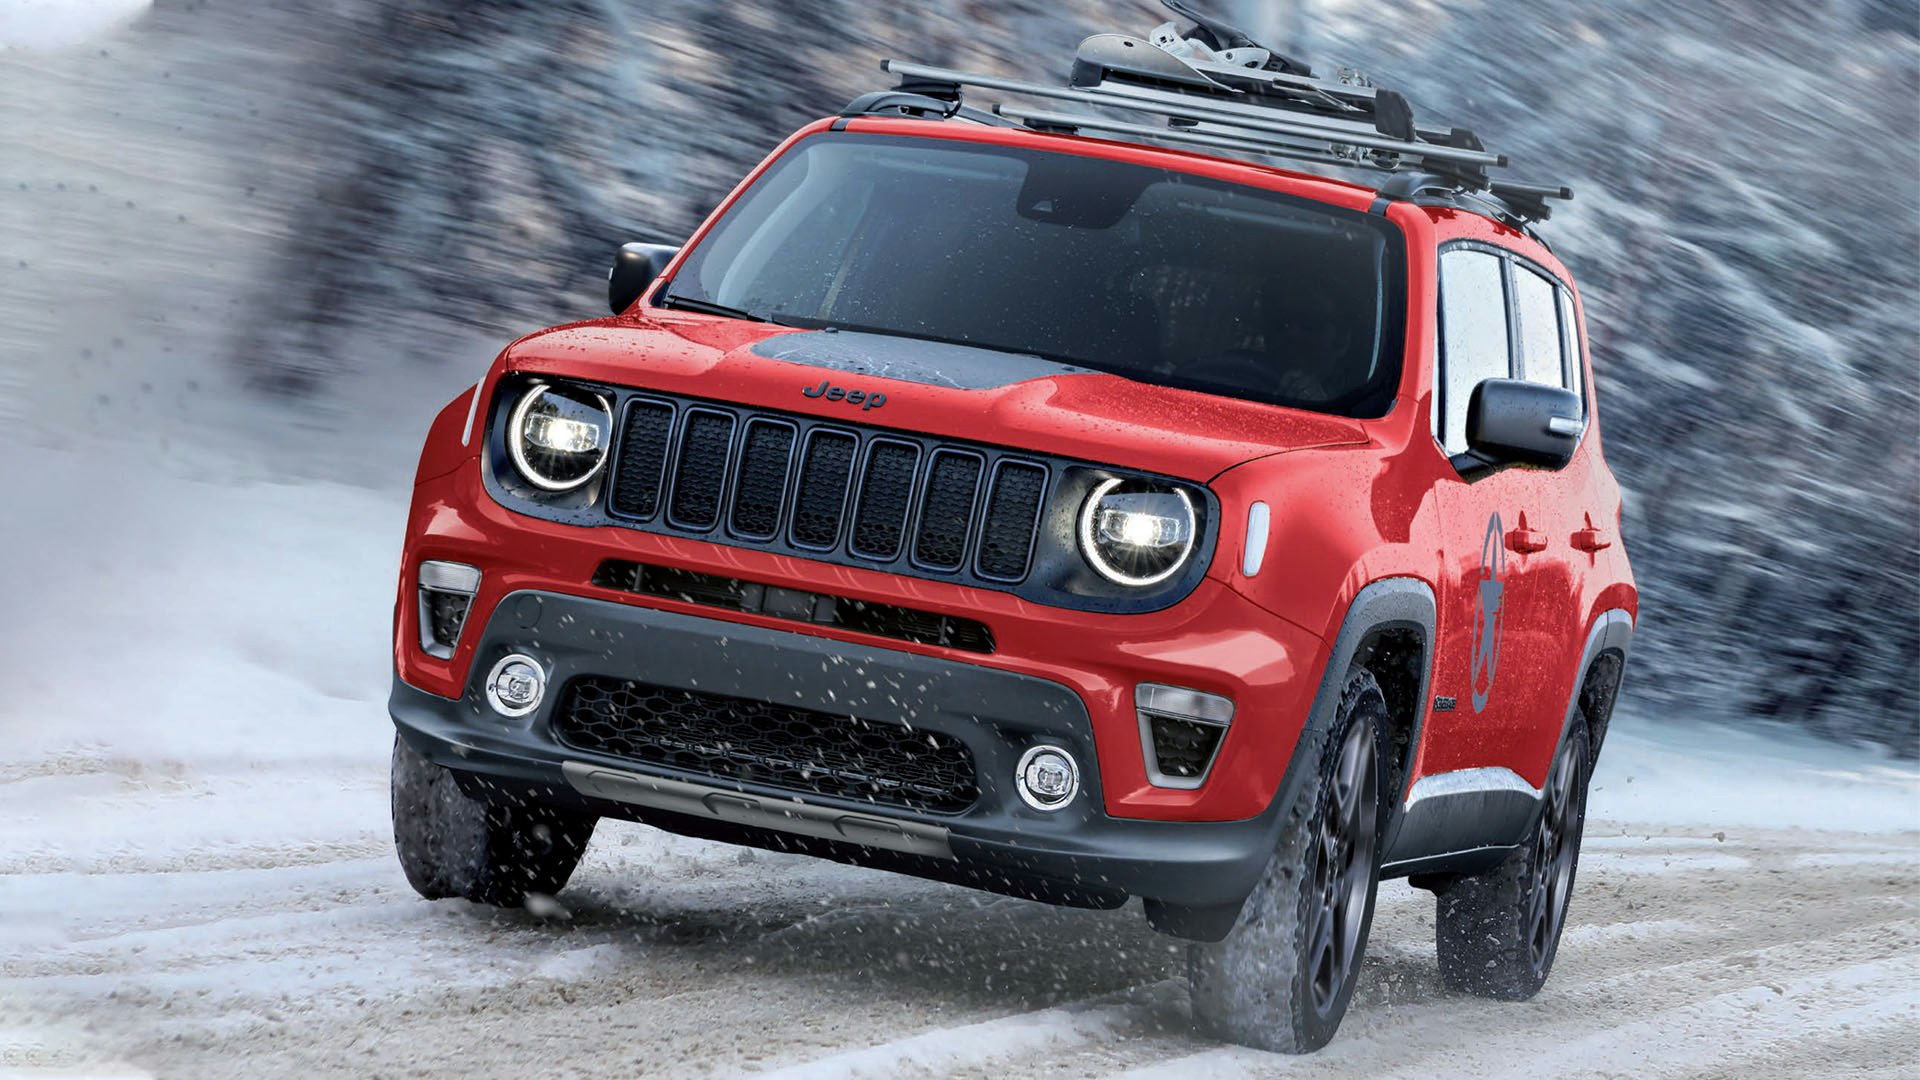 Jeep Renegade i snevejr